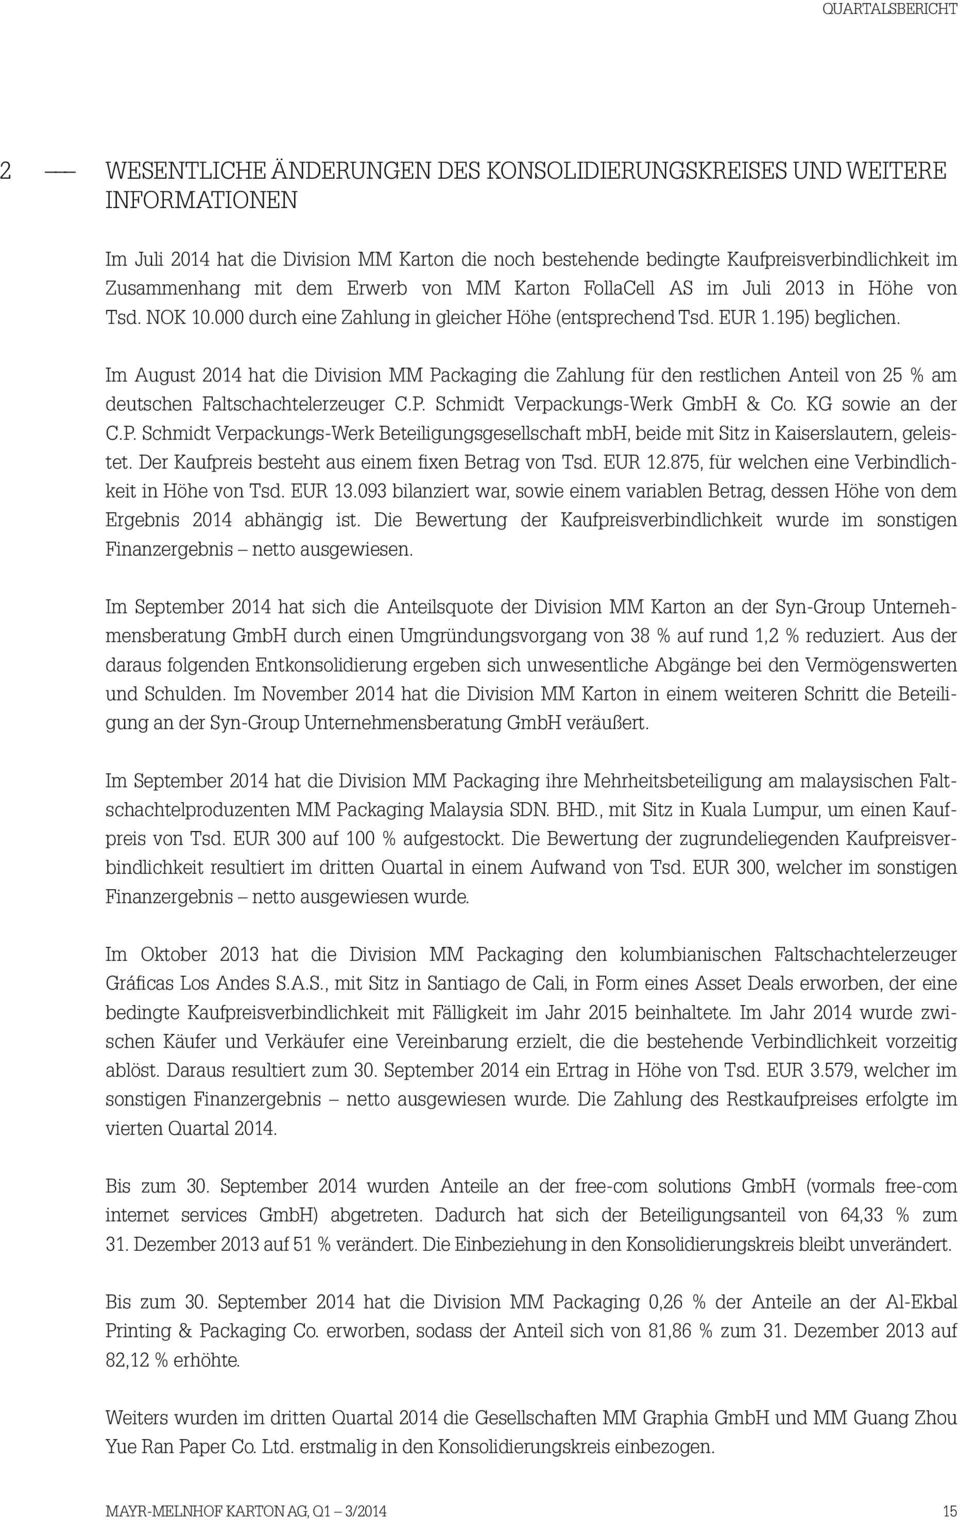 Im August 2014 hat die Division MM Packaging die Zahlung für den restlichen Anteil von 25 % am deutschen Faltschachtelerzeuger C.P. Schmidt Verpackungs-Werk GmbH & Co. KG sowie an der C.P. Schmidt Verpackungs-Werk Beteiligungsgesellschaft mbh, beide mit Sitz in Kaiserslautern, geleistet.